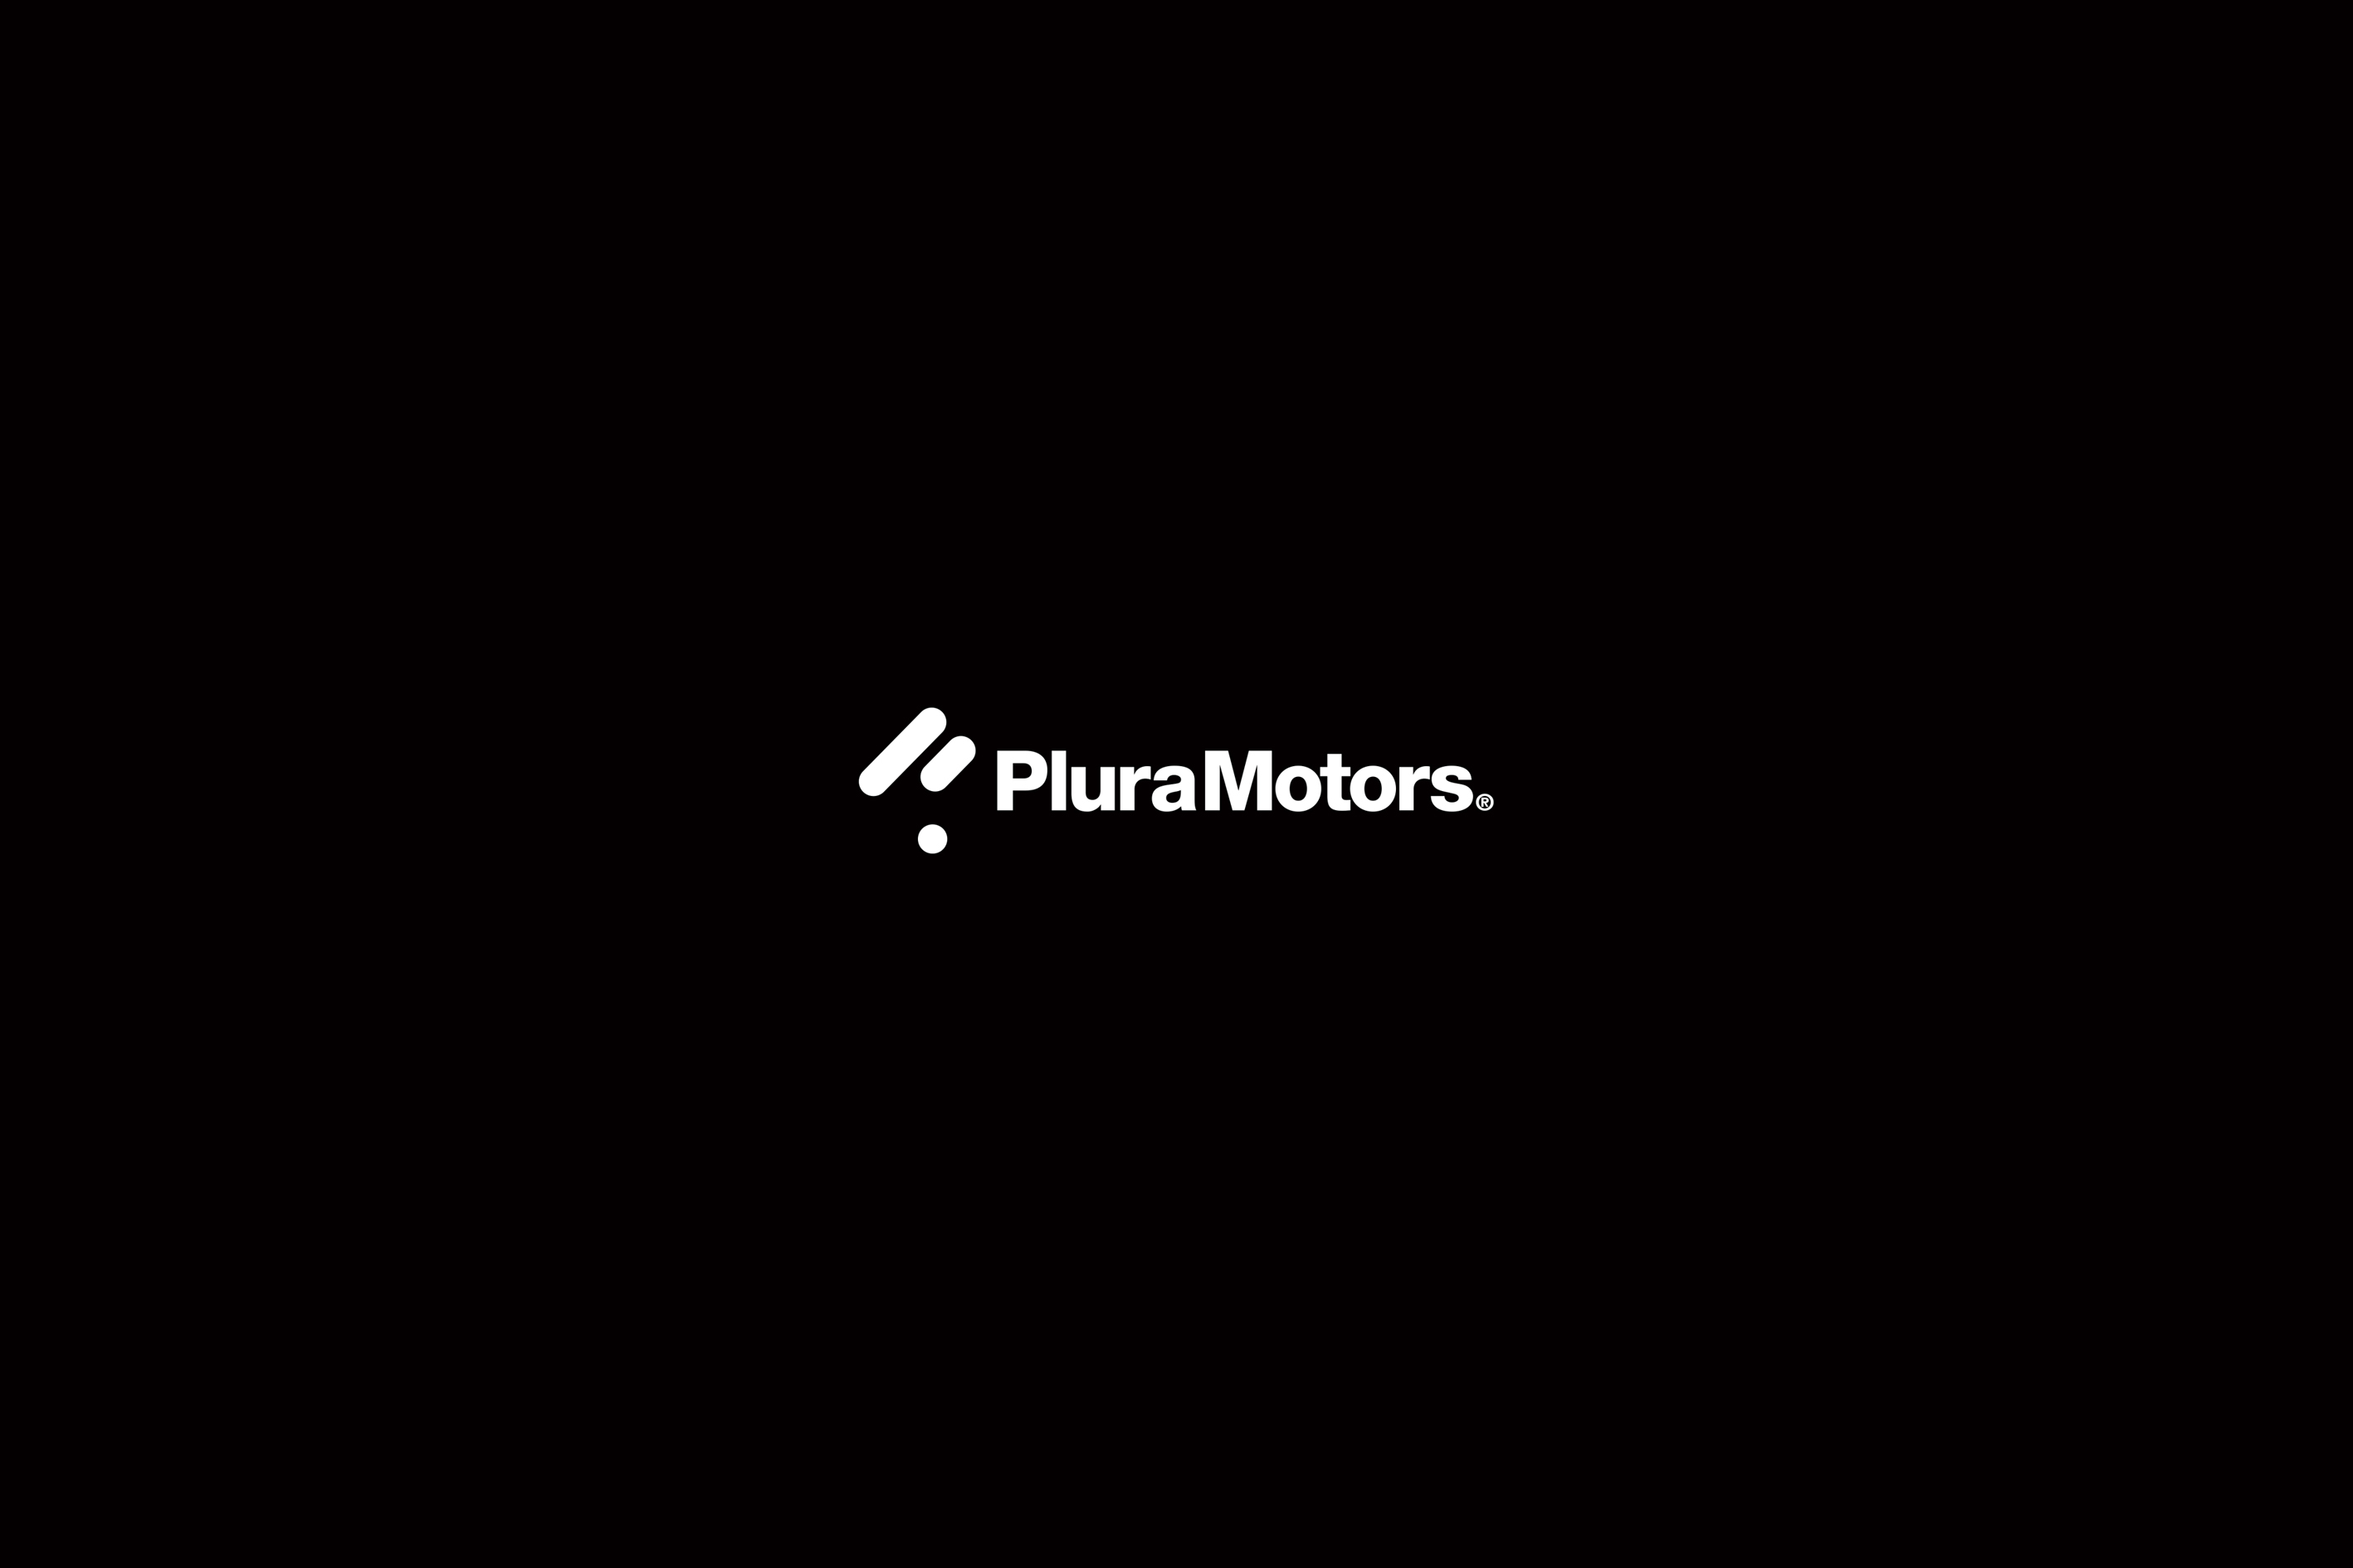 Plura Motors®